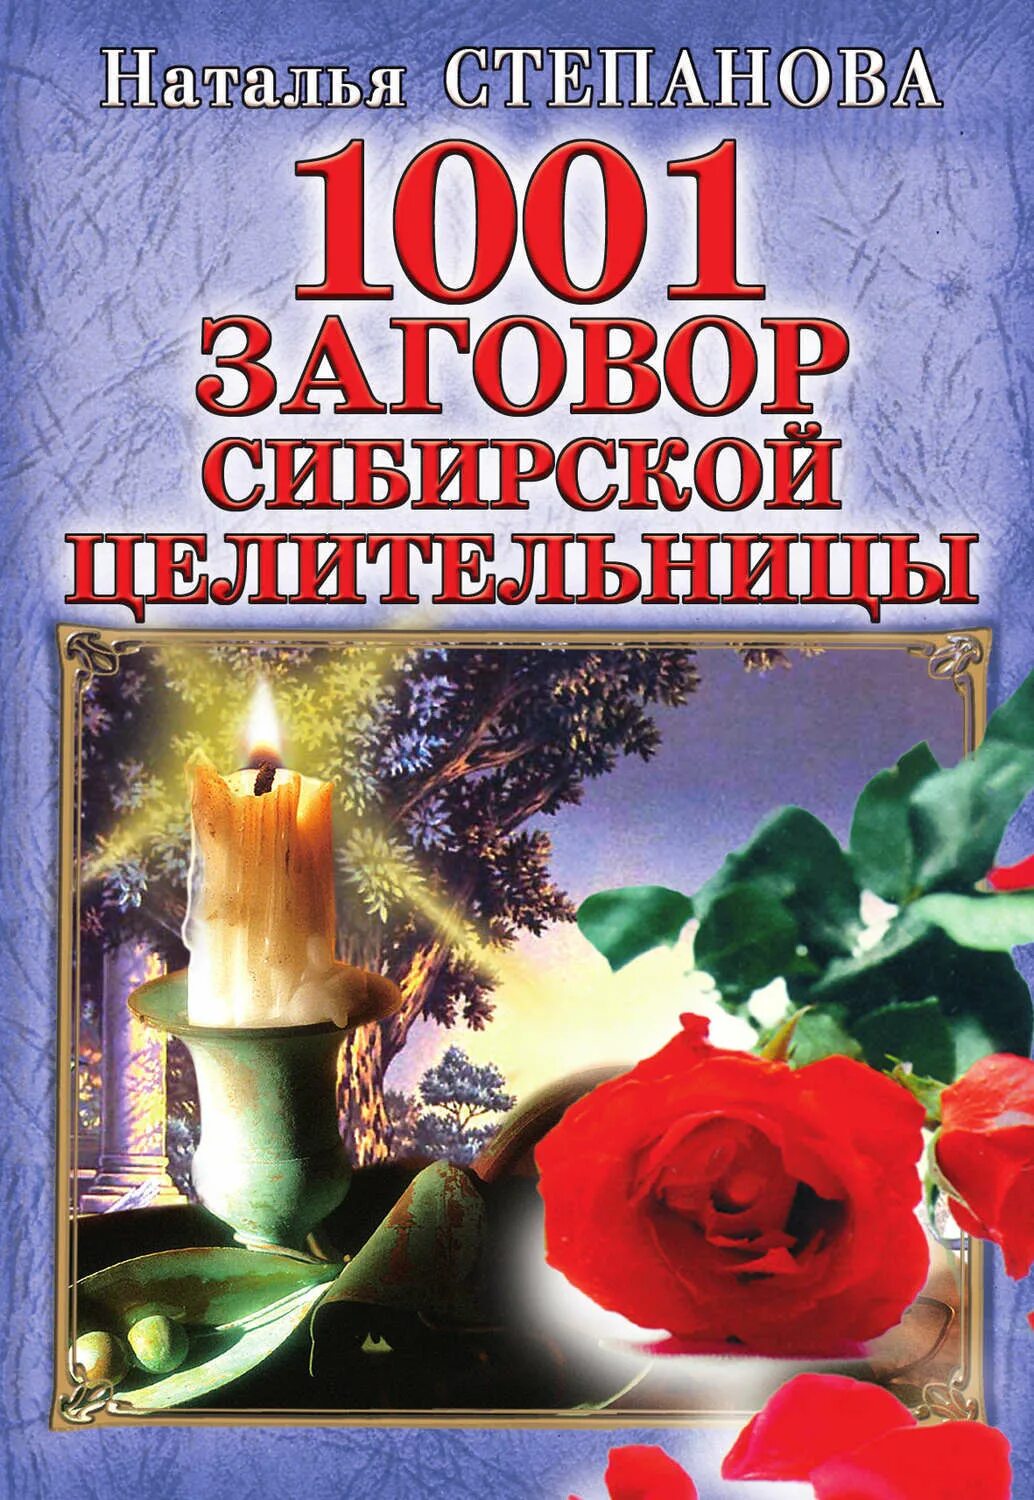 1001 Заговор сибирской целительницы Натальи степановой. Сайт сибирской целительницы